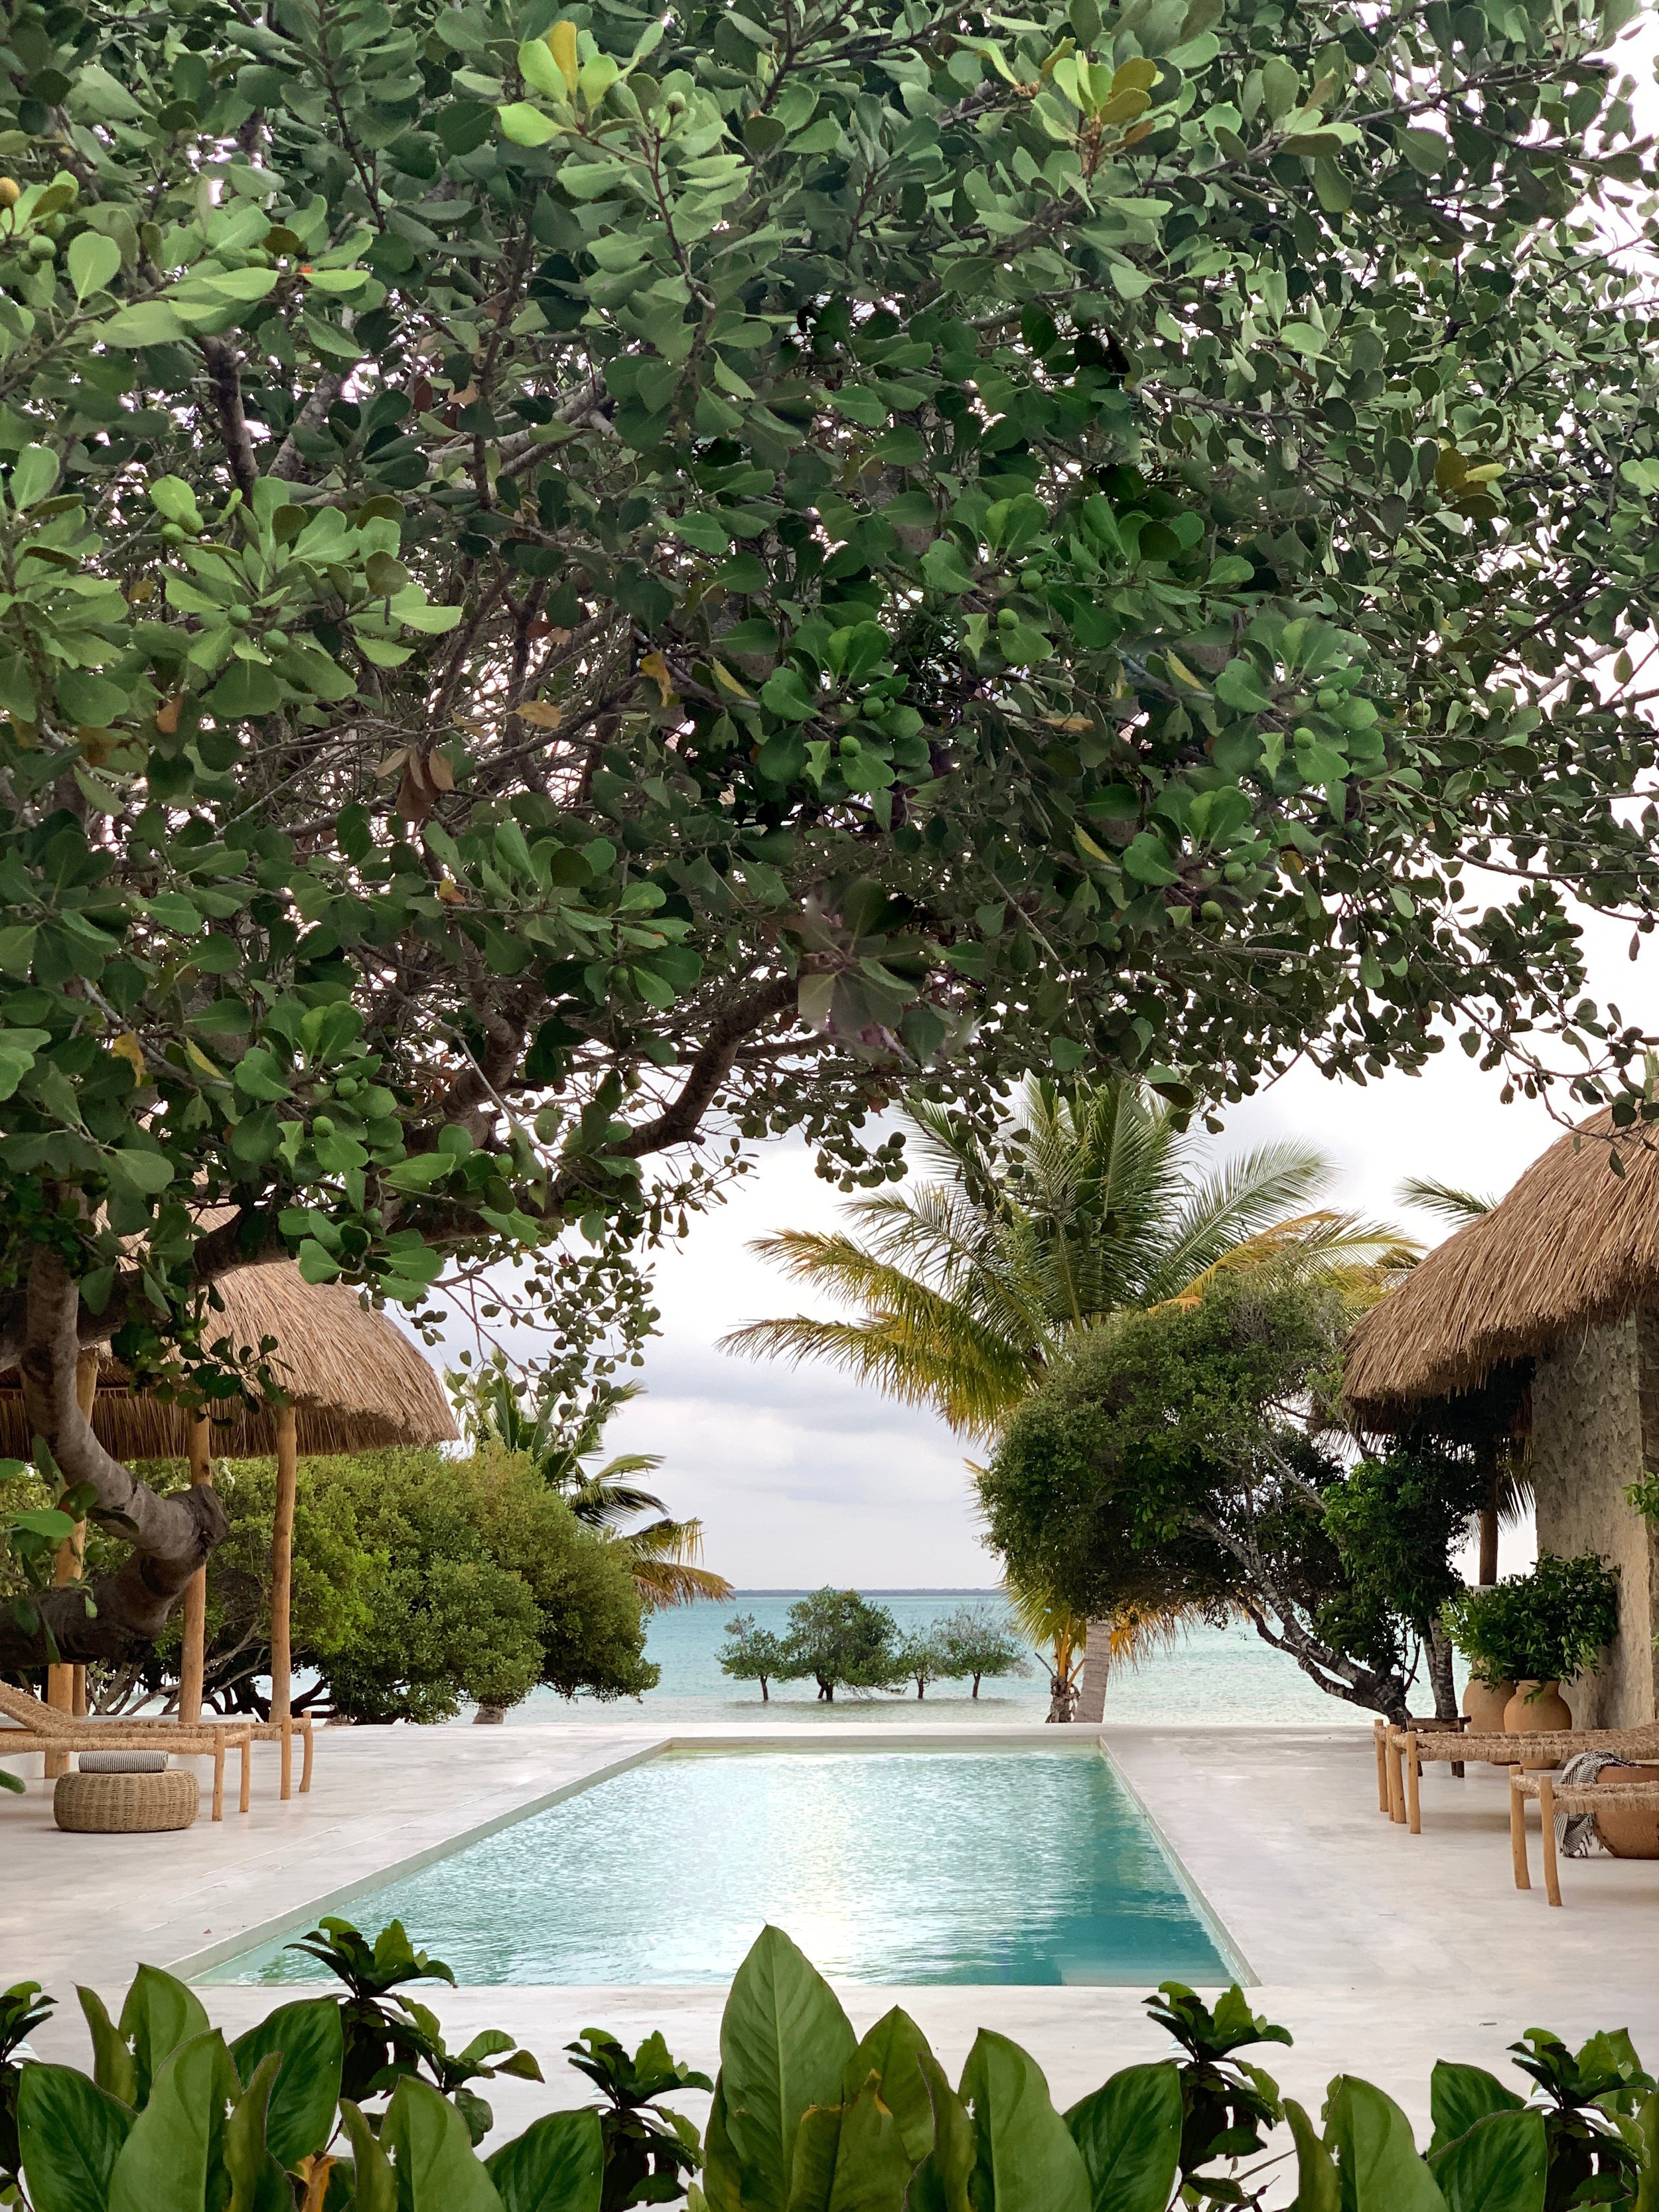 Hotel-Weekend-Barefoot-Luxury-sussurro pool foliage.jpg